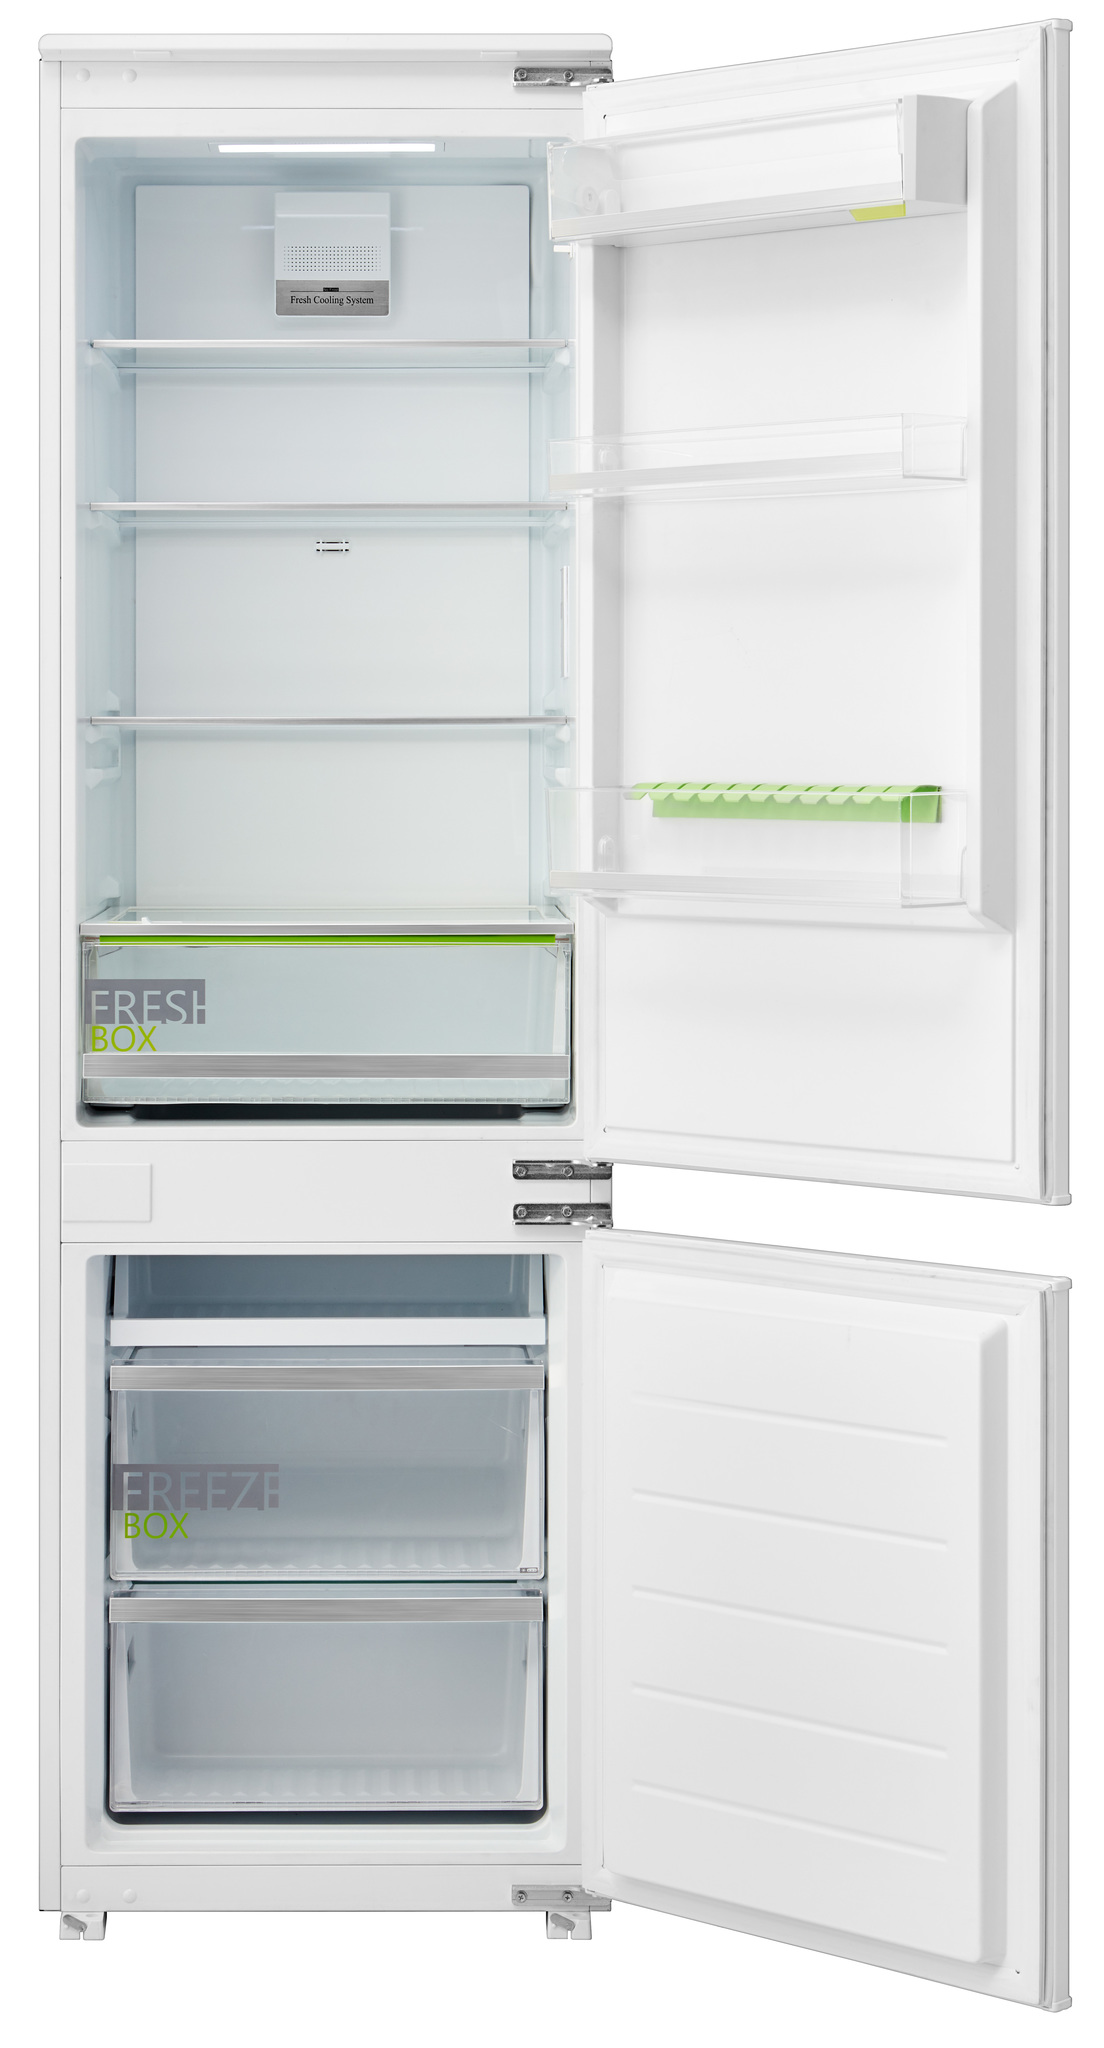 9032 мастера по установке встраиваемого холодильника